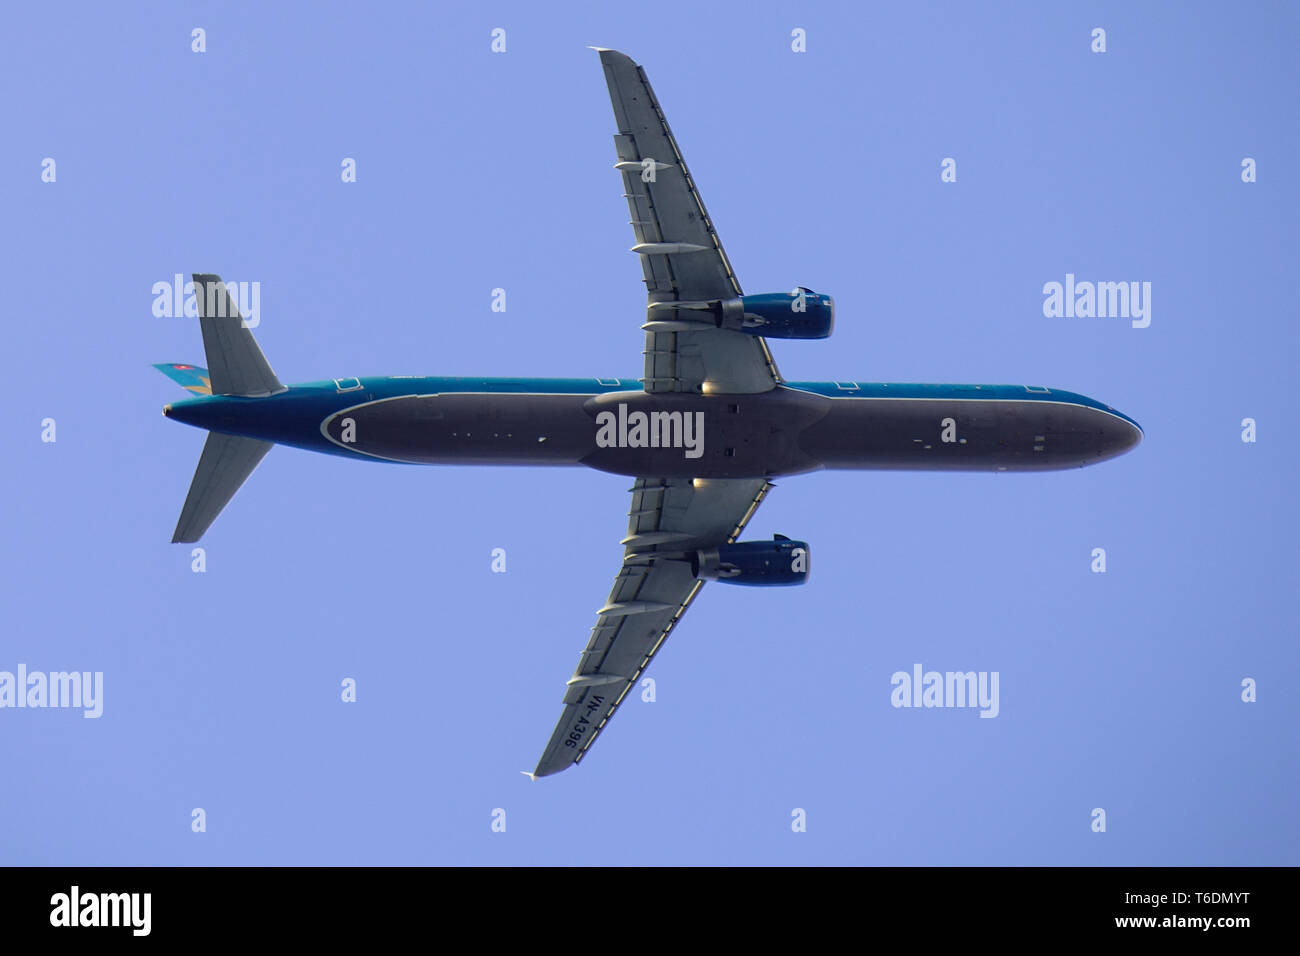 Saigon, Vietnam - Jan 29, 2019. Ein Airbus A321 Flugzeug von Vietnam Airlines (VN-A396) Weg vom Flughafen Tan Son Nhut (SGN). Stockfoto